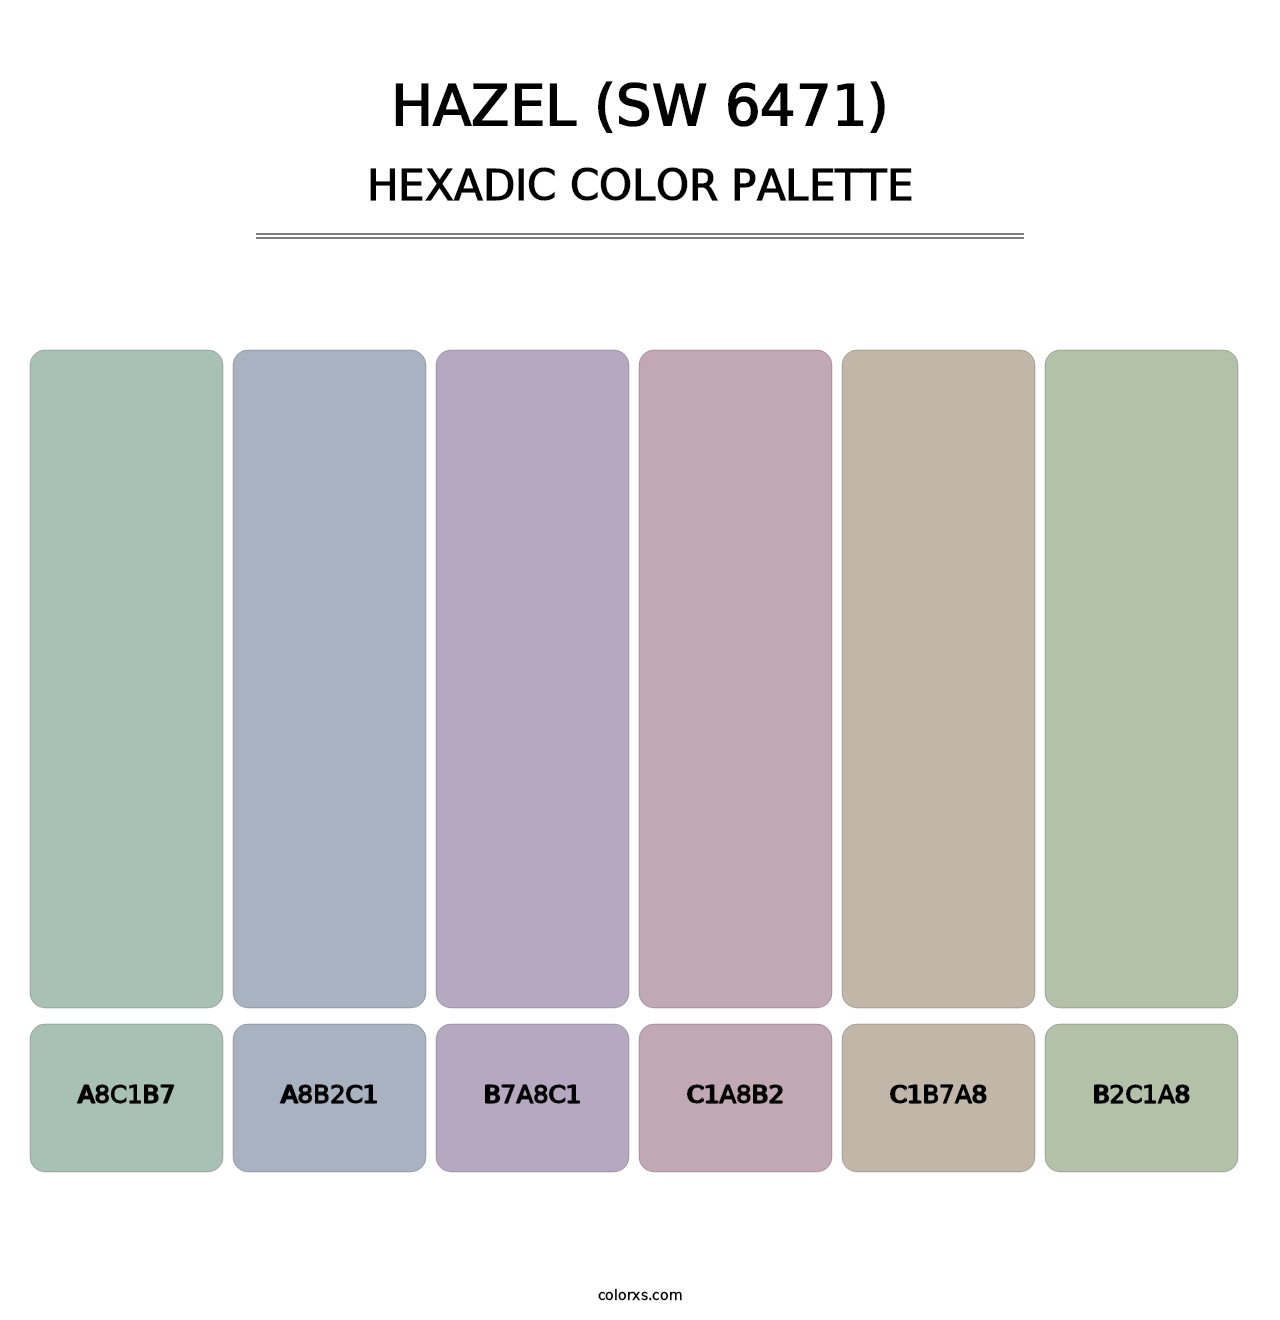 Hazel (SW 6471) - Hexadic Color Palette